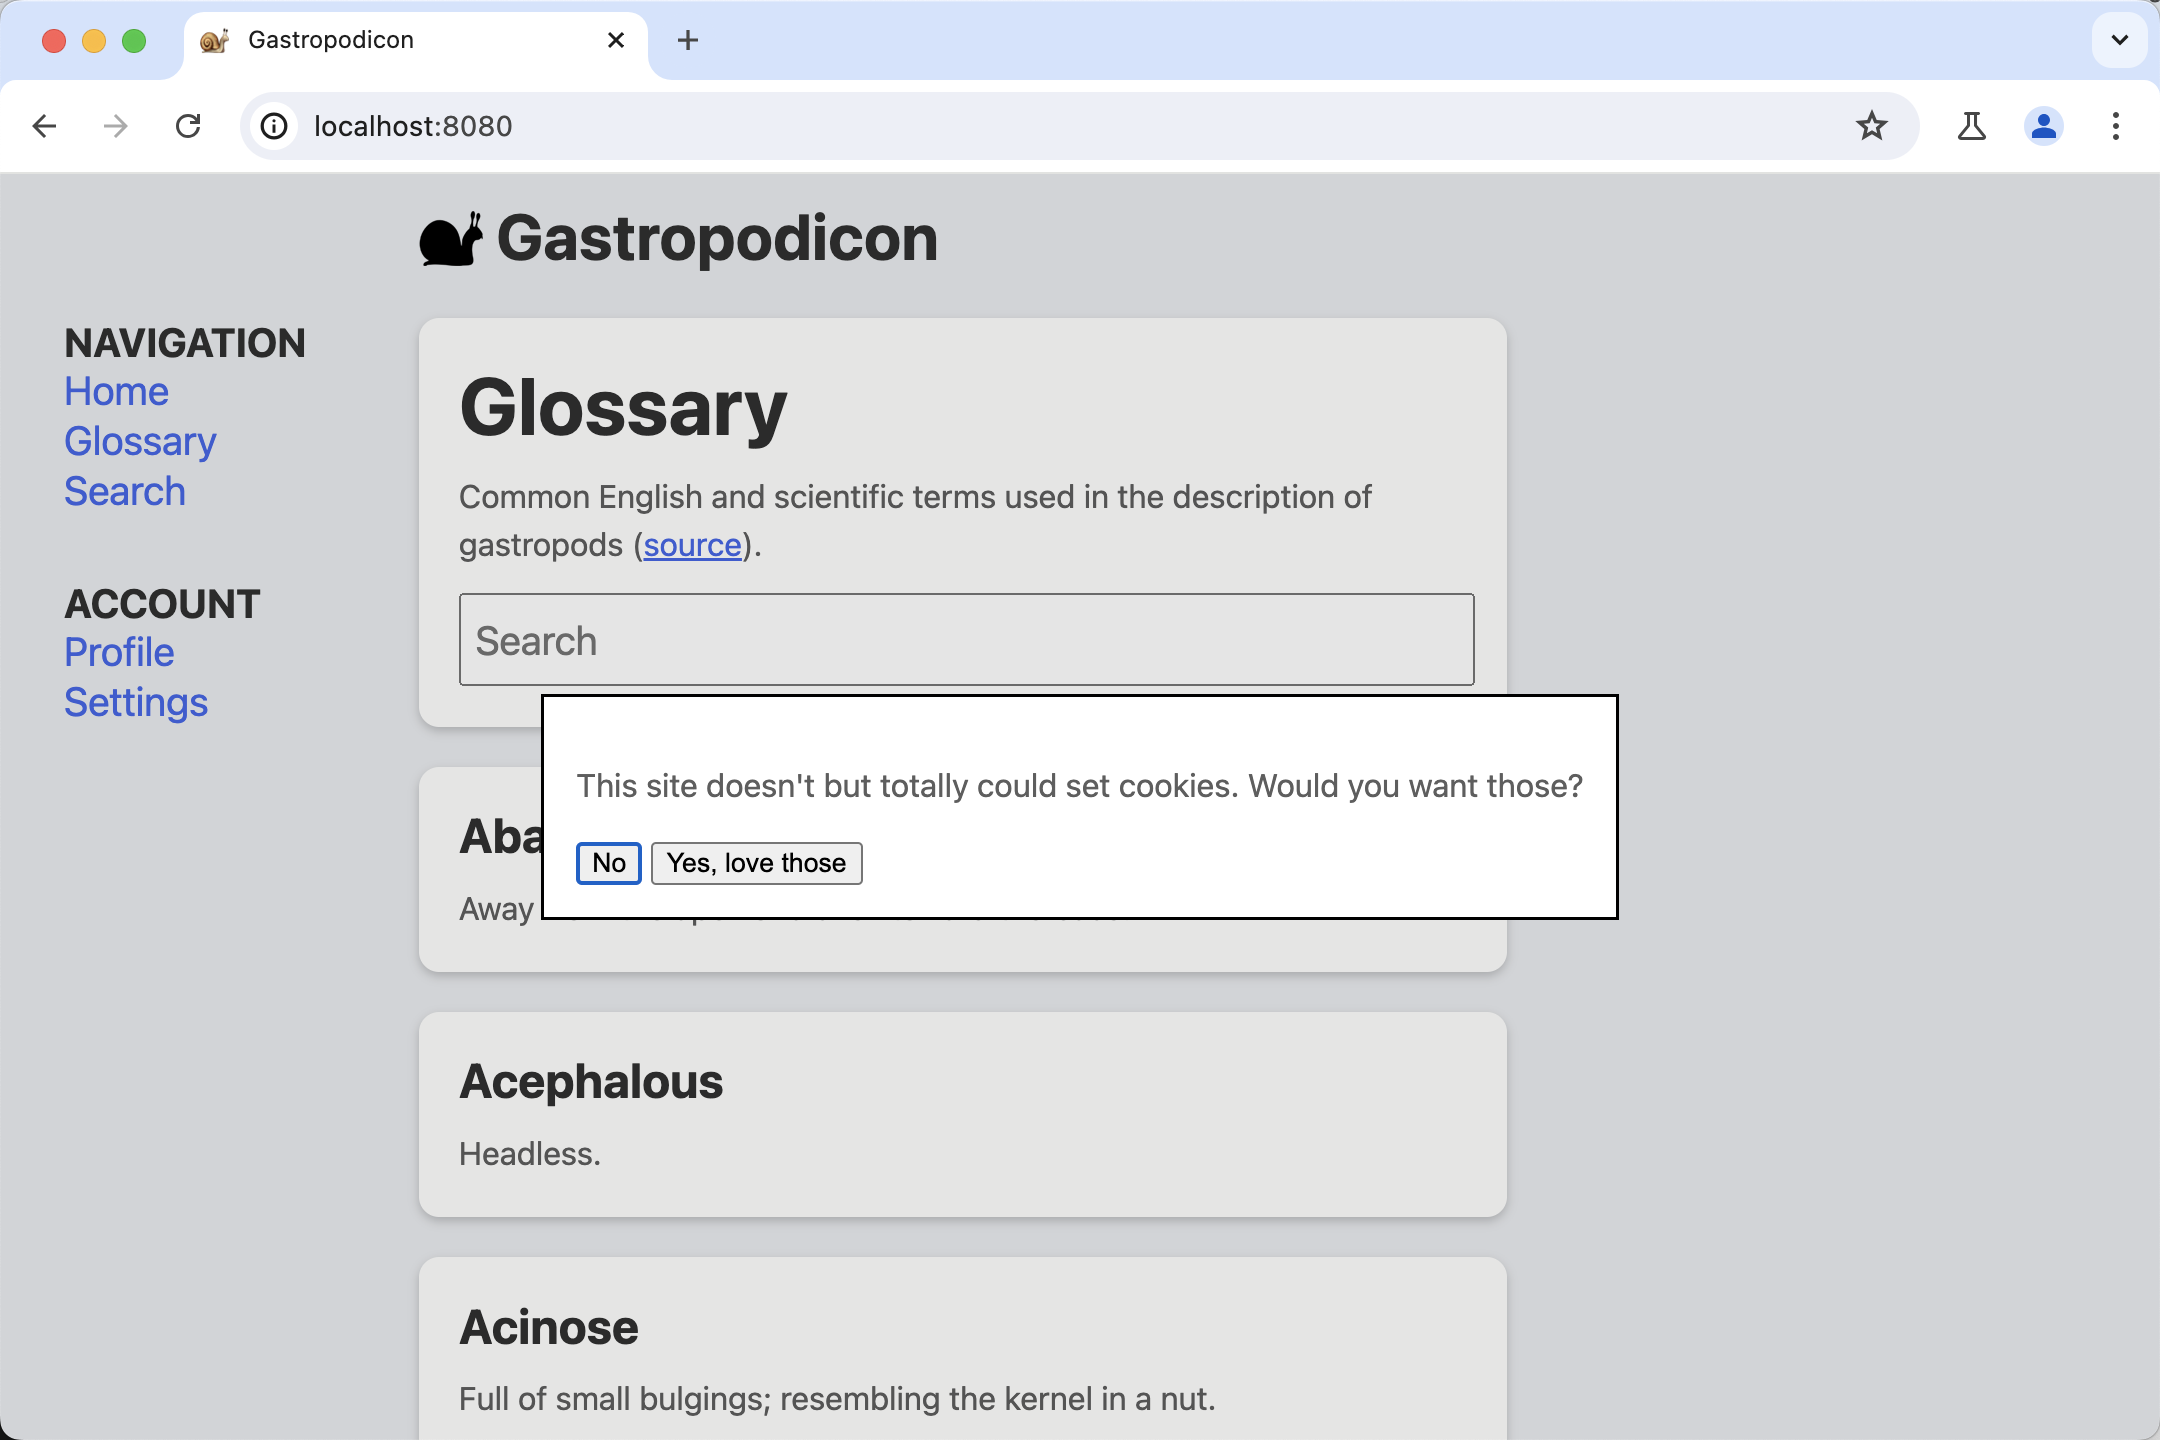 “Gastropodicon 演示”页面的屏幕截图